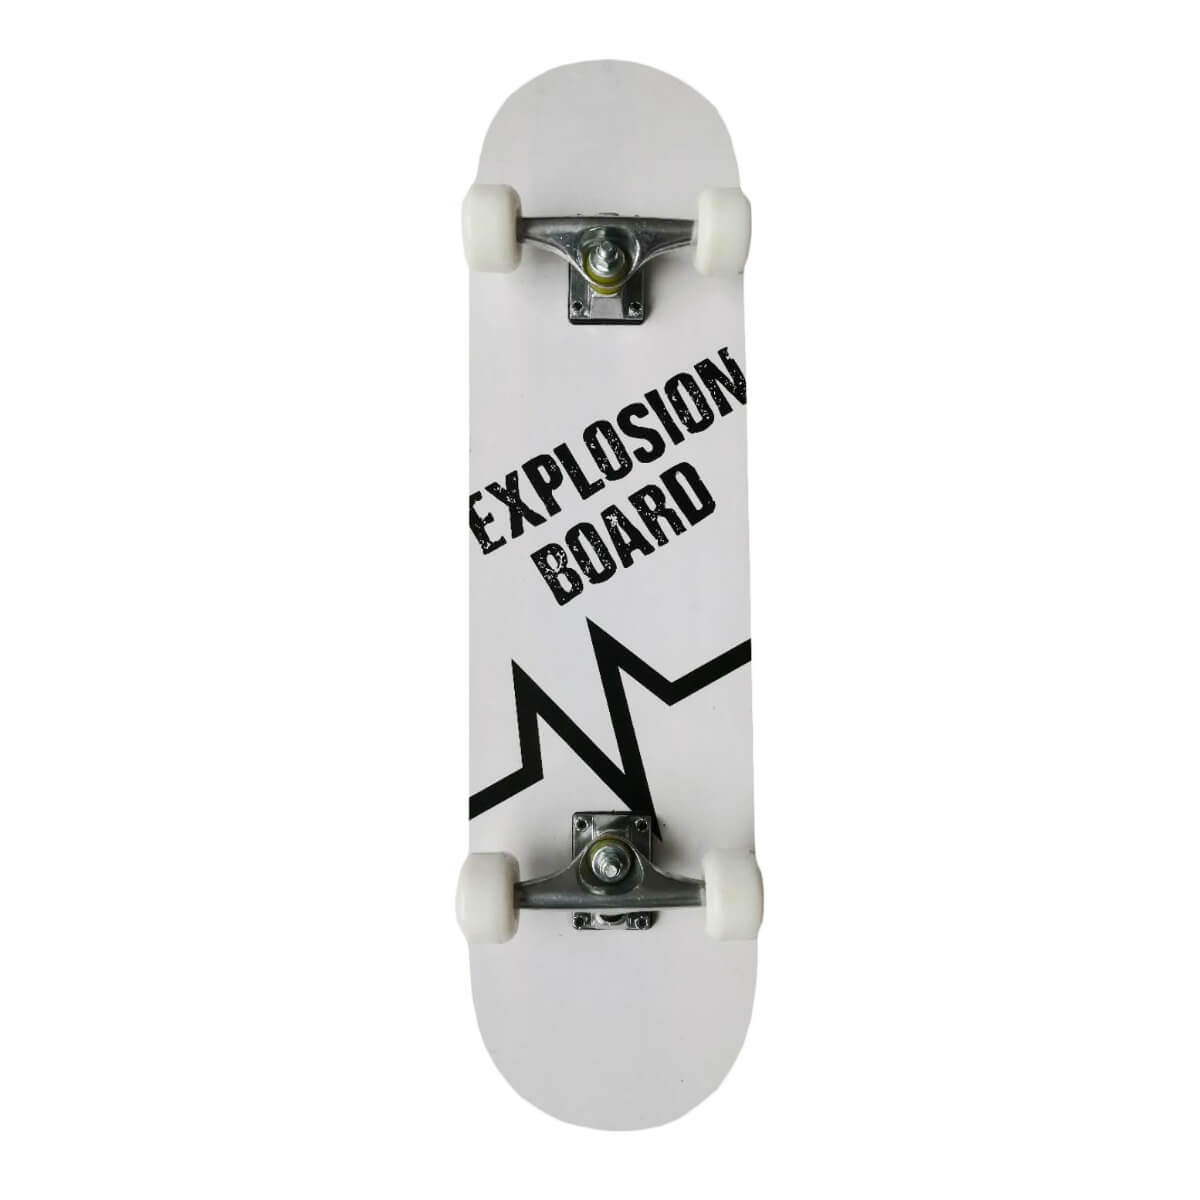 Skateboard EXPLOSION 31" - weiß